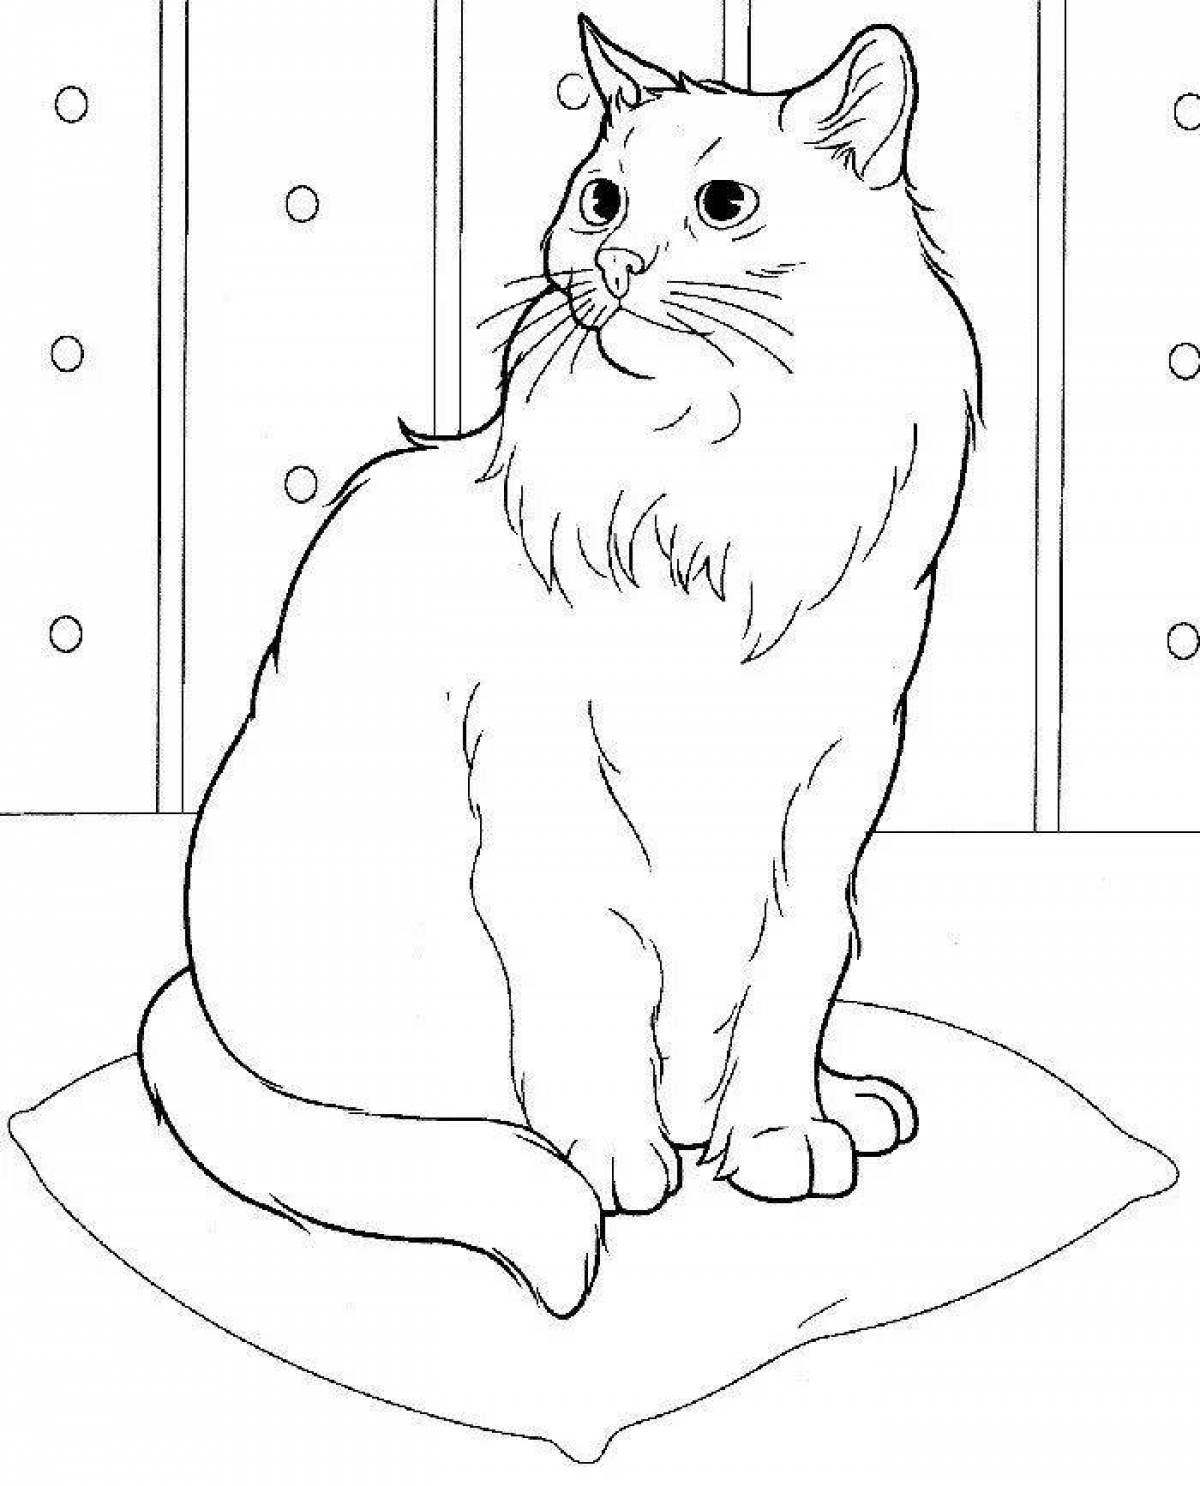 Остроумный рисунок кошки